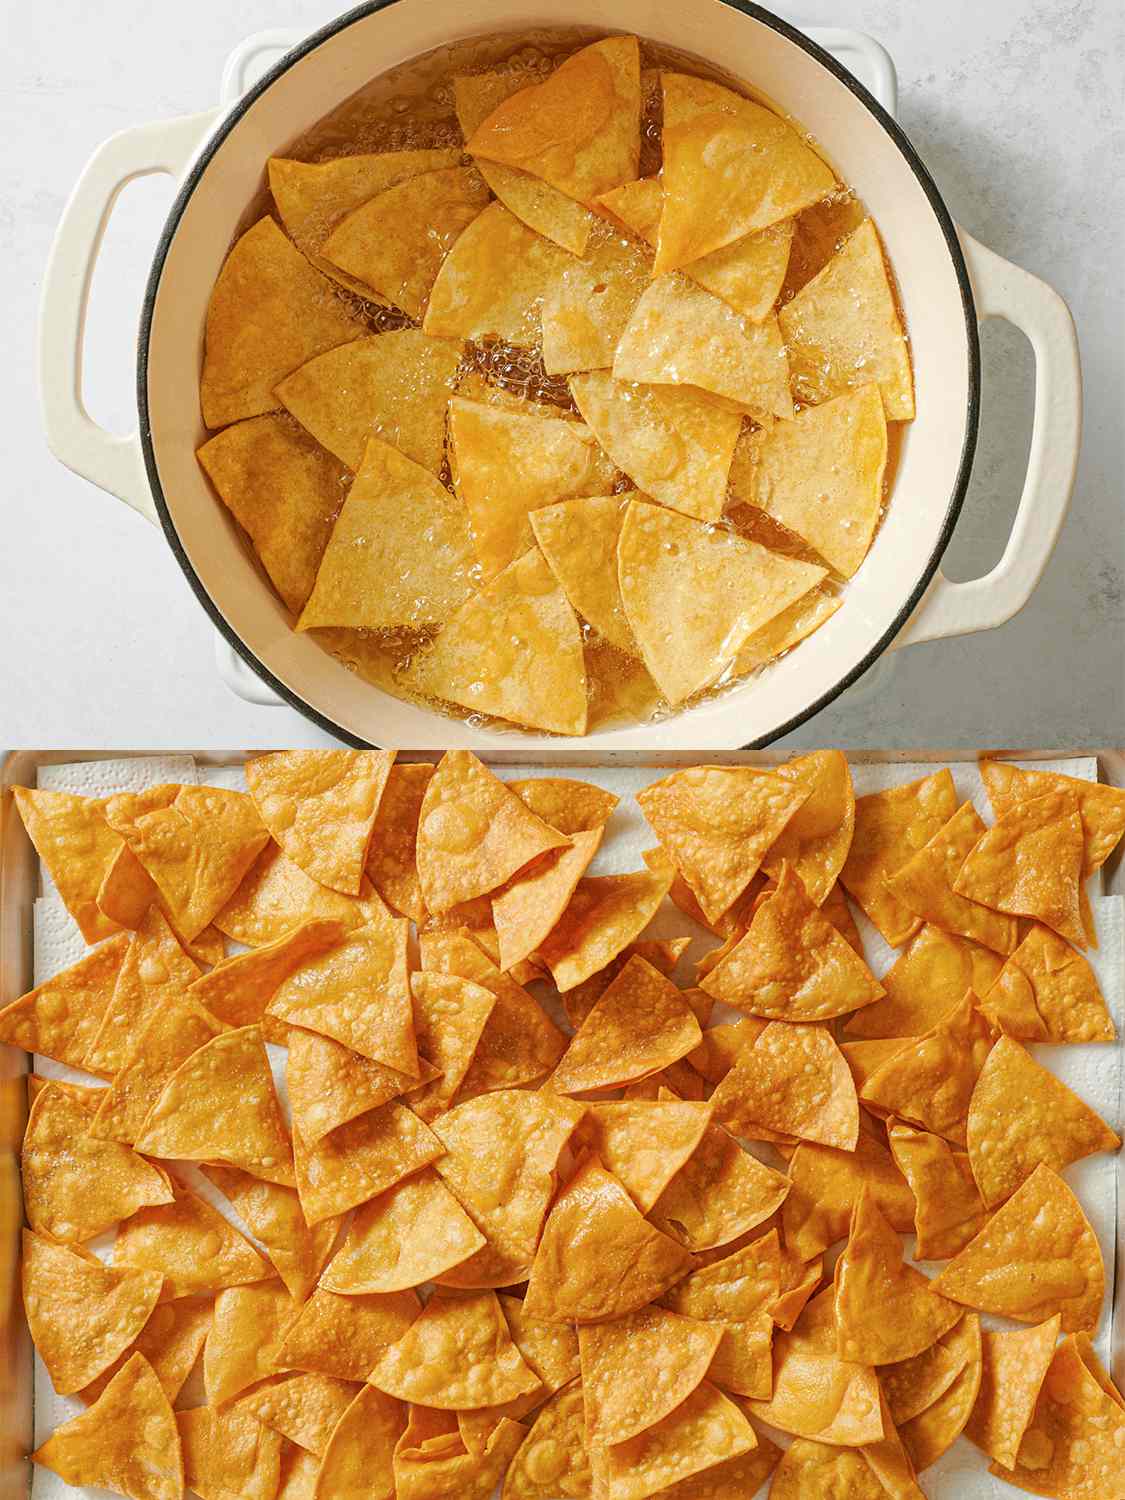 两幅图像的拼贴画。上图显示的是在荷兰烤箱中煎炸的玉米片。下面的图片显示油炸玉米片摊在平底锅上，上面铺着纸巾。